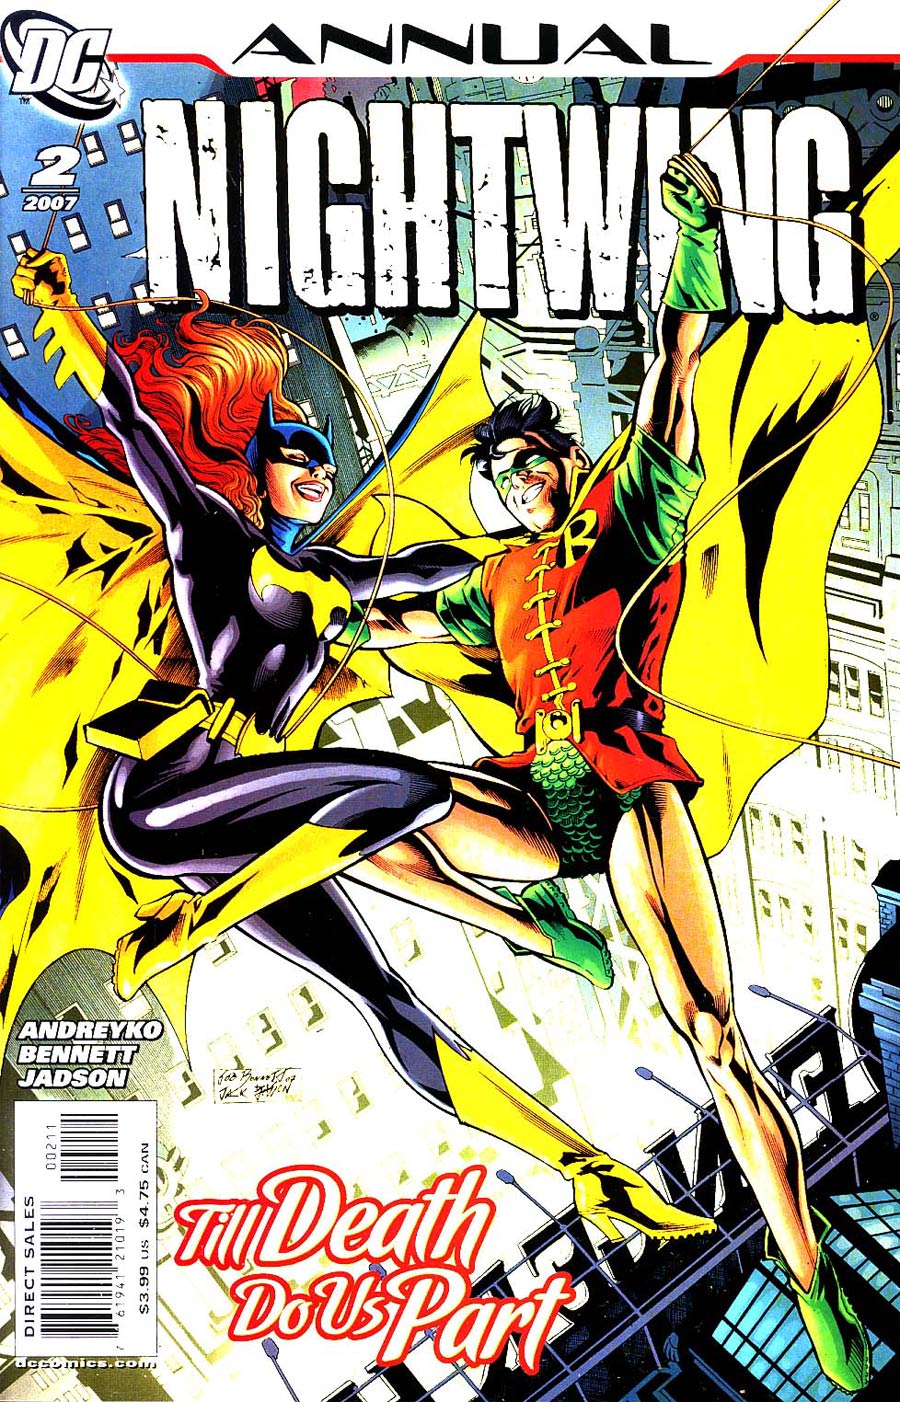 Nightwing Annual #2